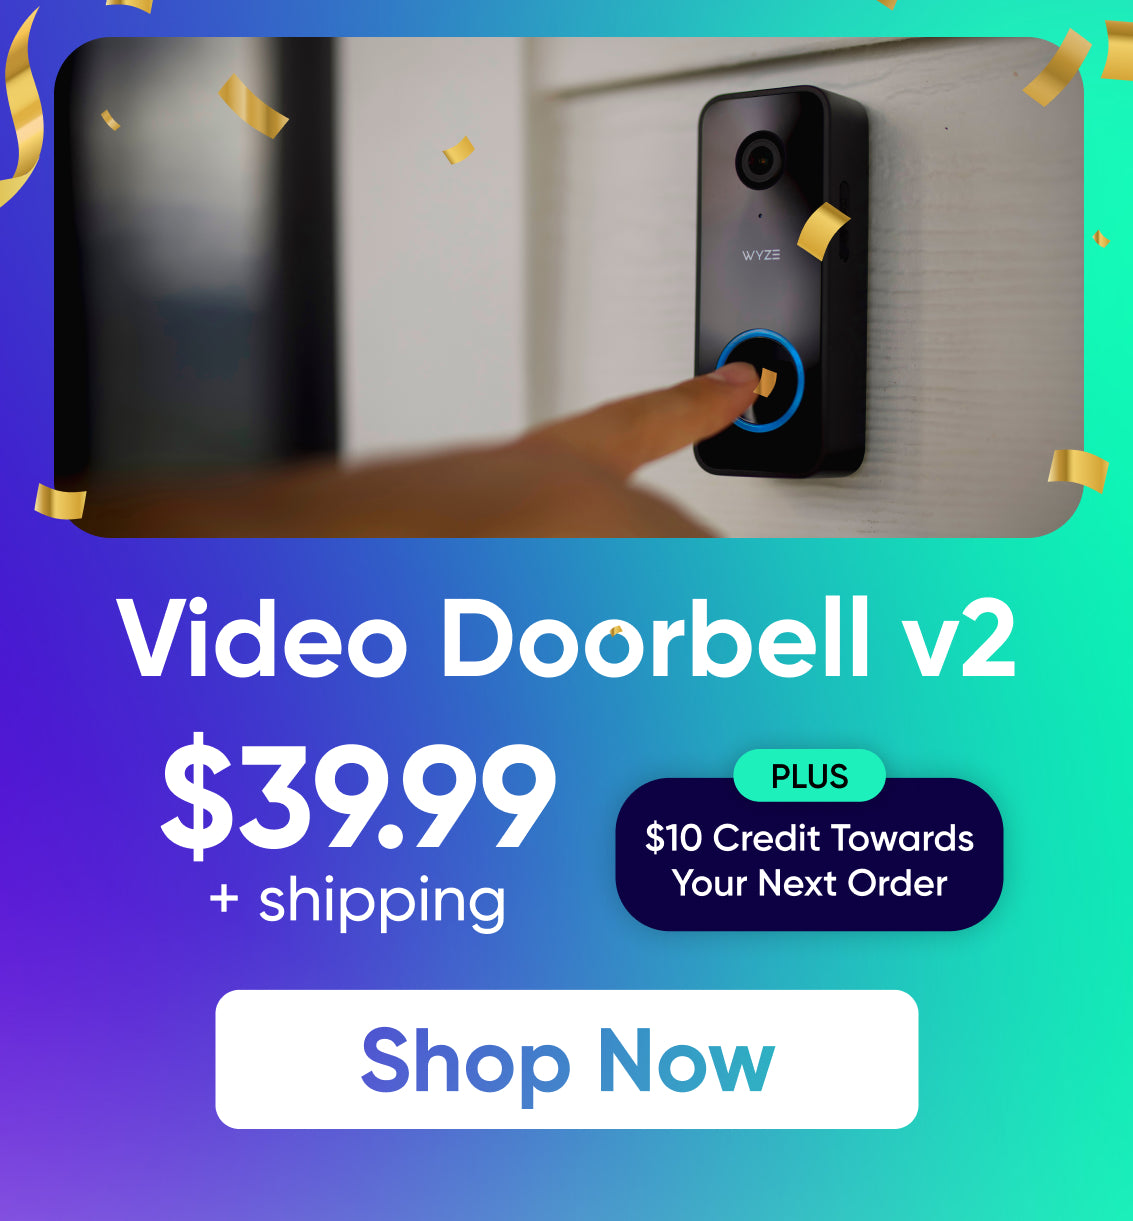 Wyze Video Doorbell v2 – Wyze Labs, Inc.